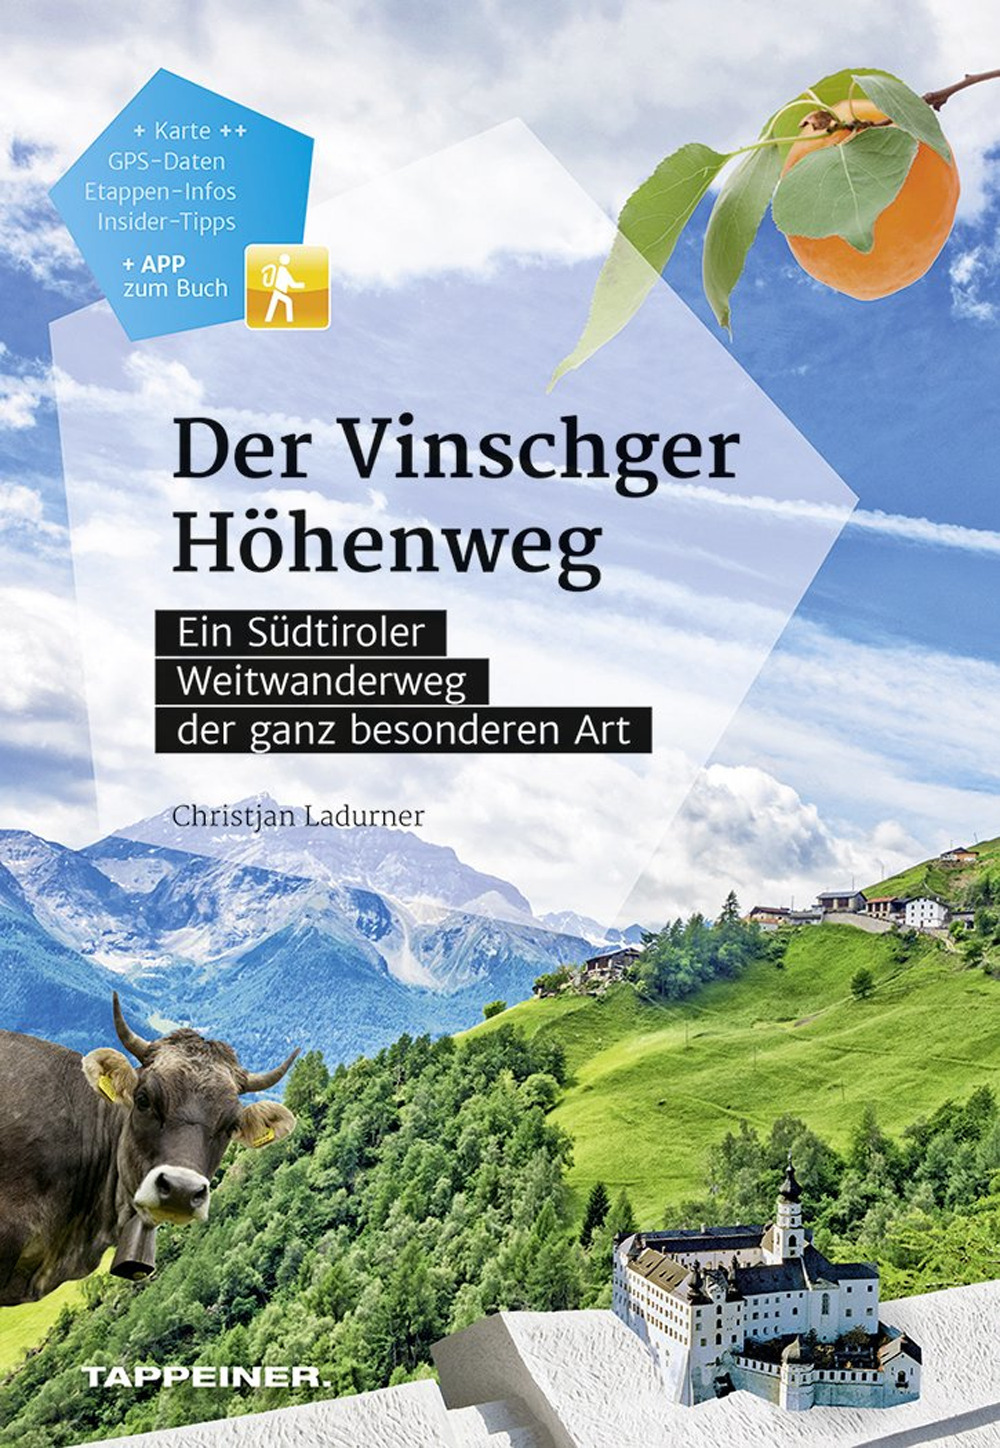 Der Vinschger Höhenweg. Ein Südtiroler Weitwanderweg der ganz besonderen Art. Con app